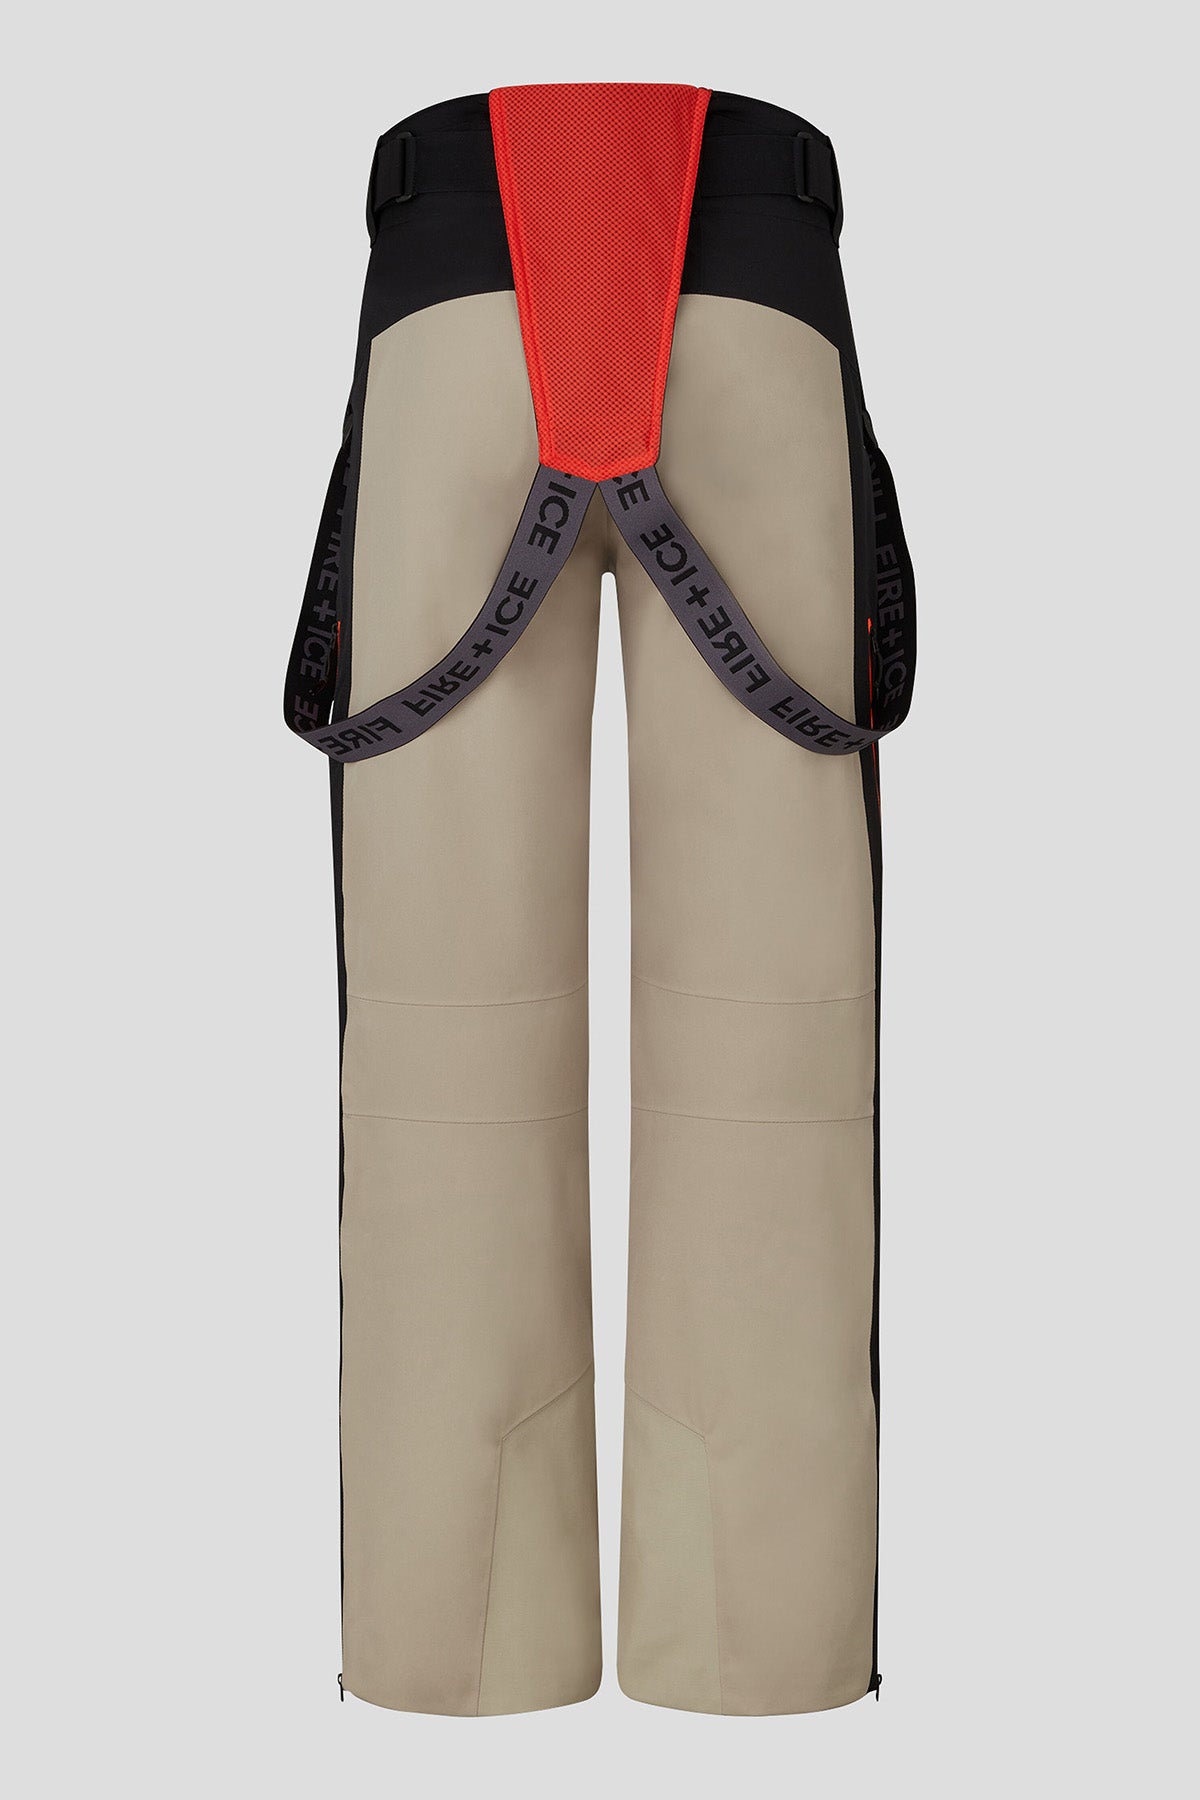 Bogner Gable Fire Ice Askılı Kayak Pantolonu-Libas Trendy Fashion Store